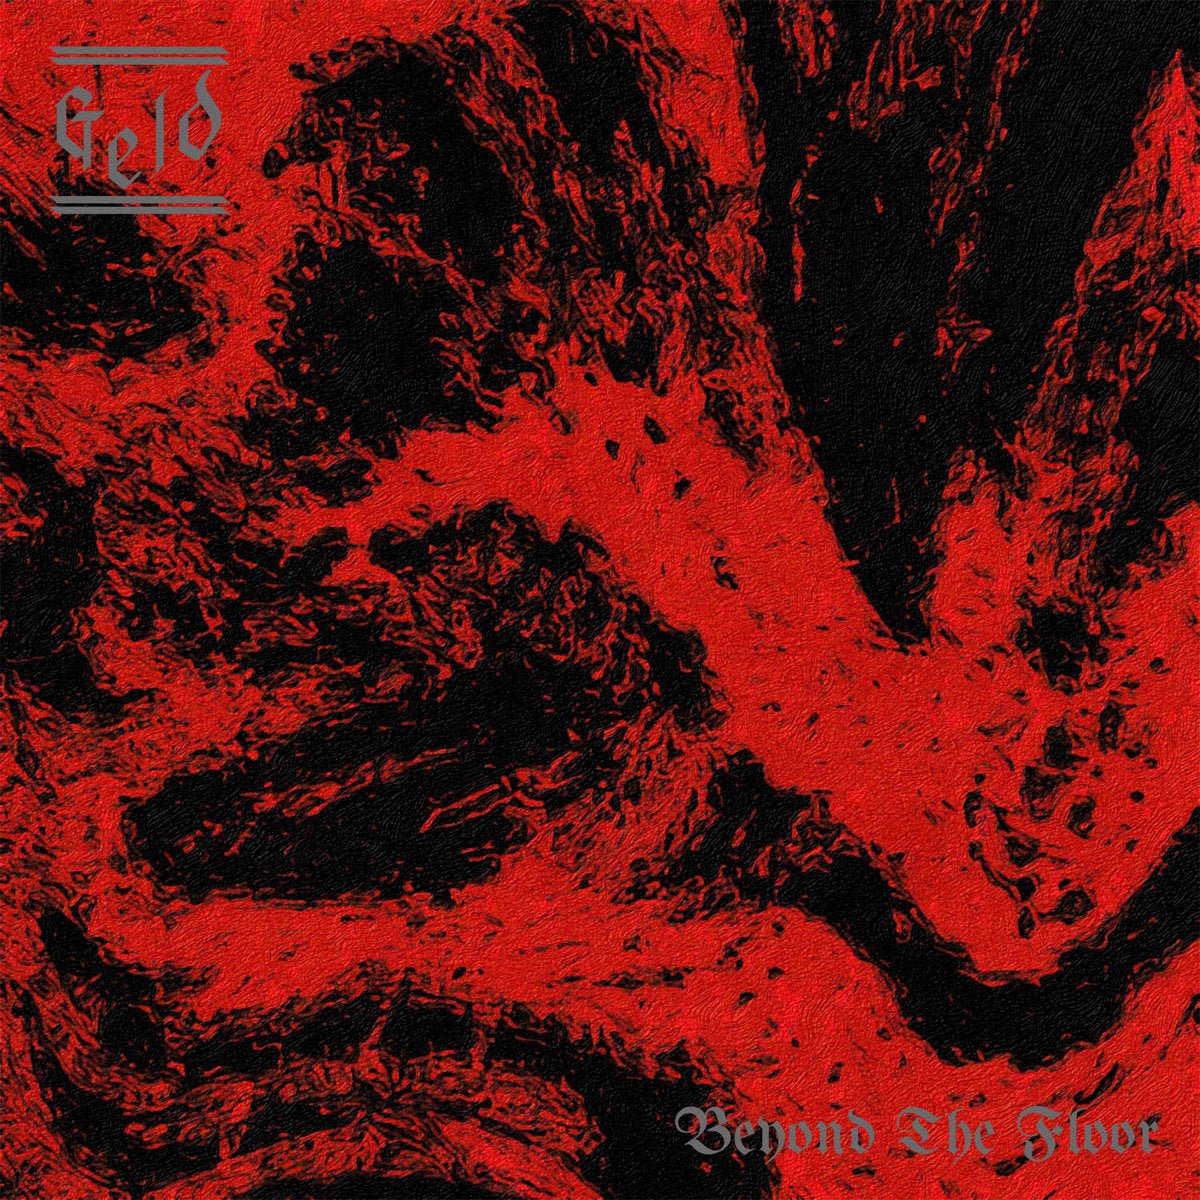 Geld - Beyond The Floor LP - Vinyl - Static Shock